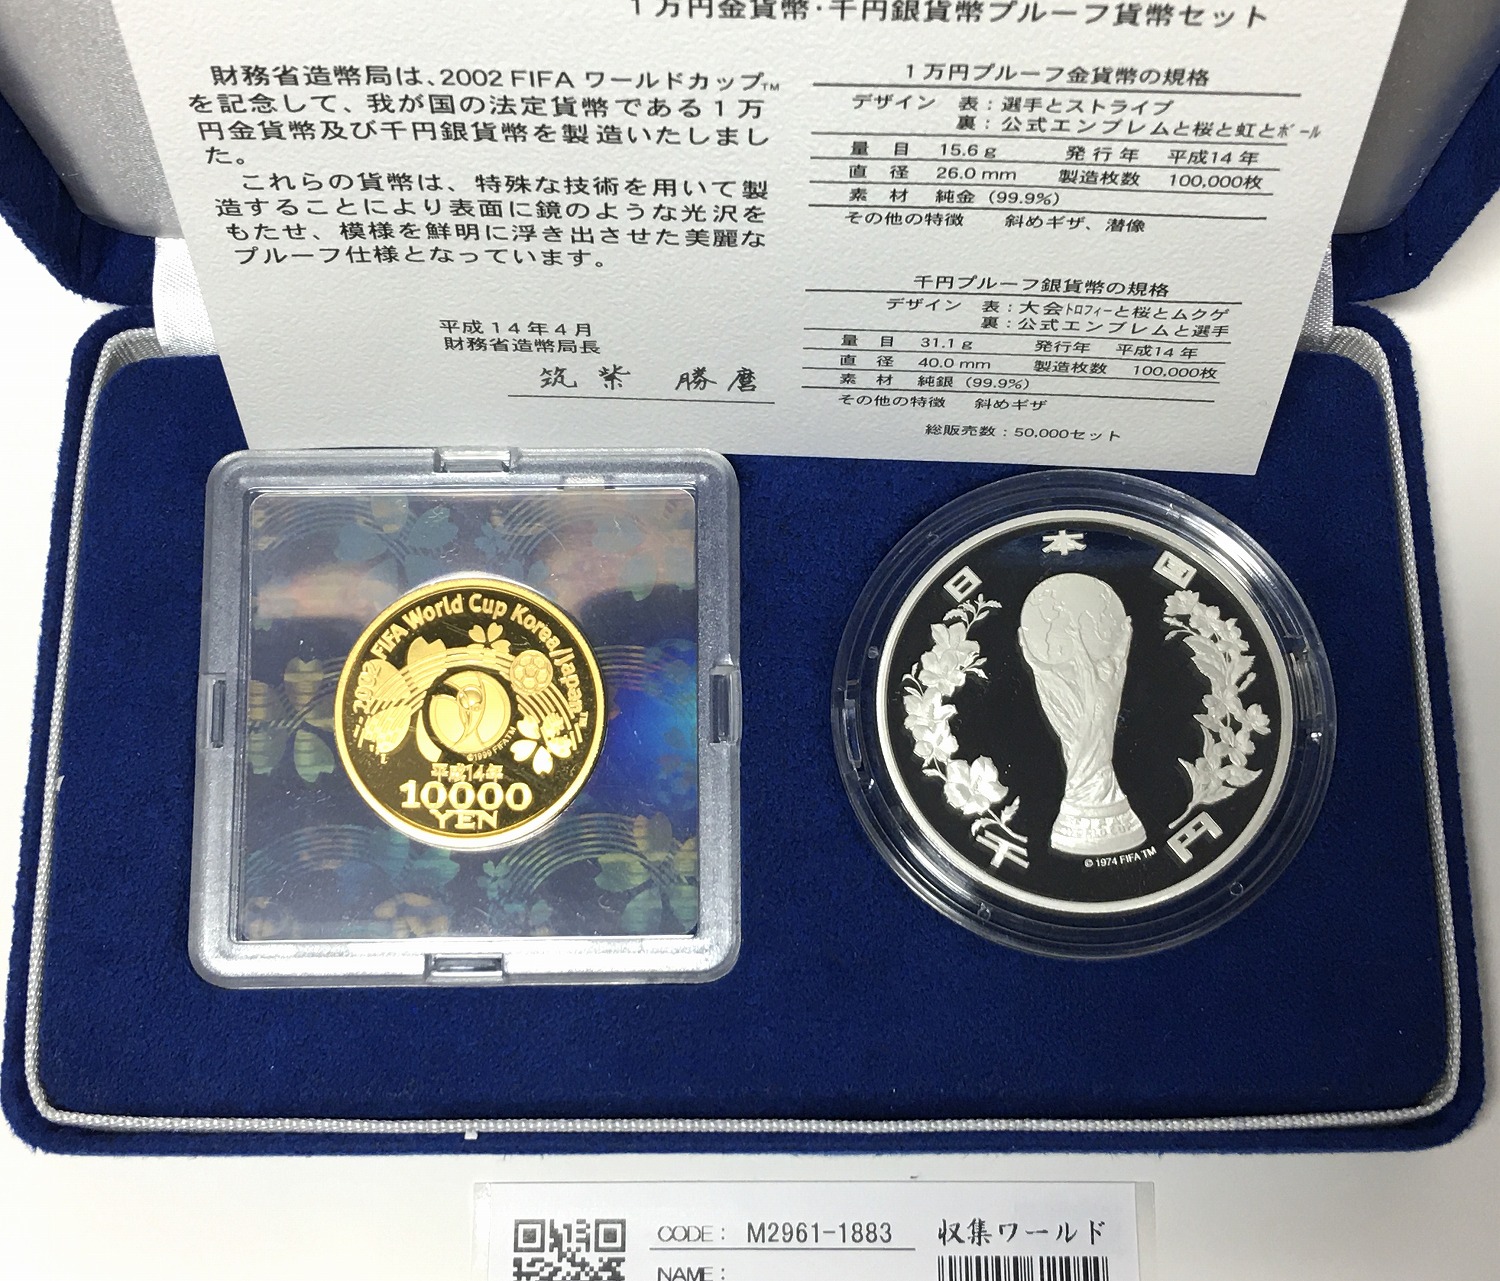 2002FIFA 日韓ワールドカップ 記念金銀プルーフ貨幣 2枚セット 完未品